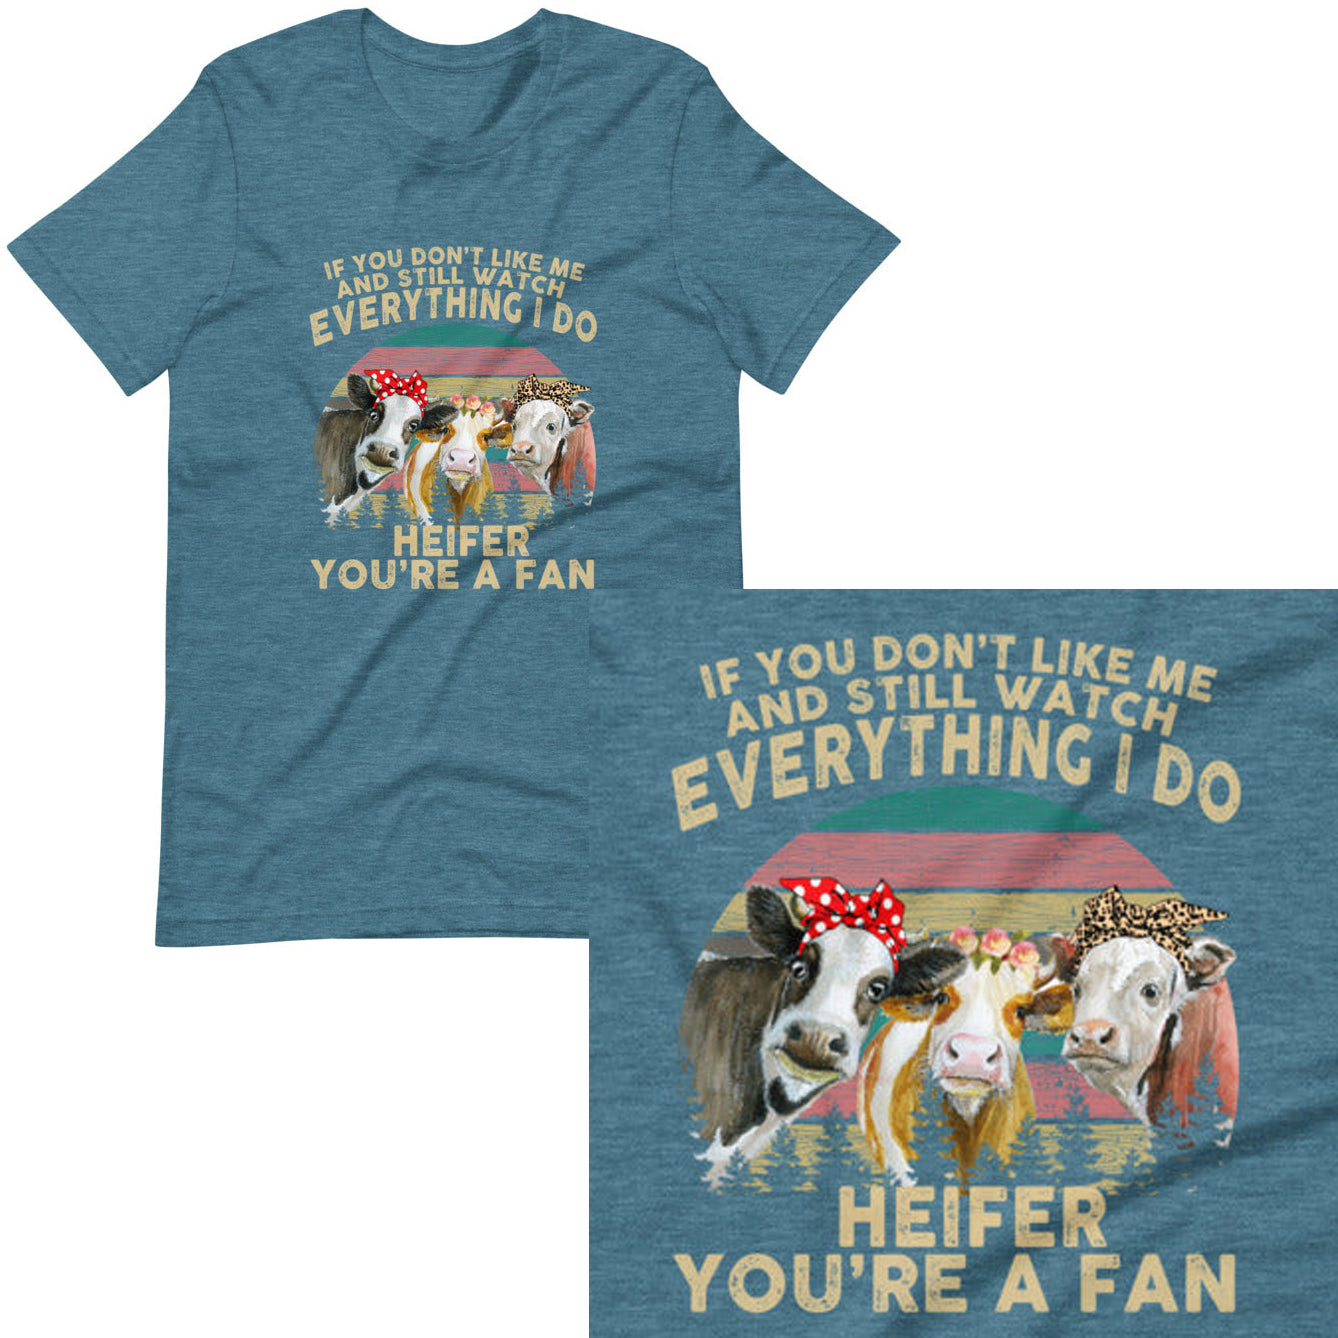 Heifer, you're a fan! T-shirt